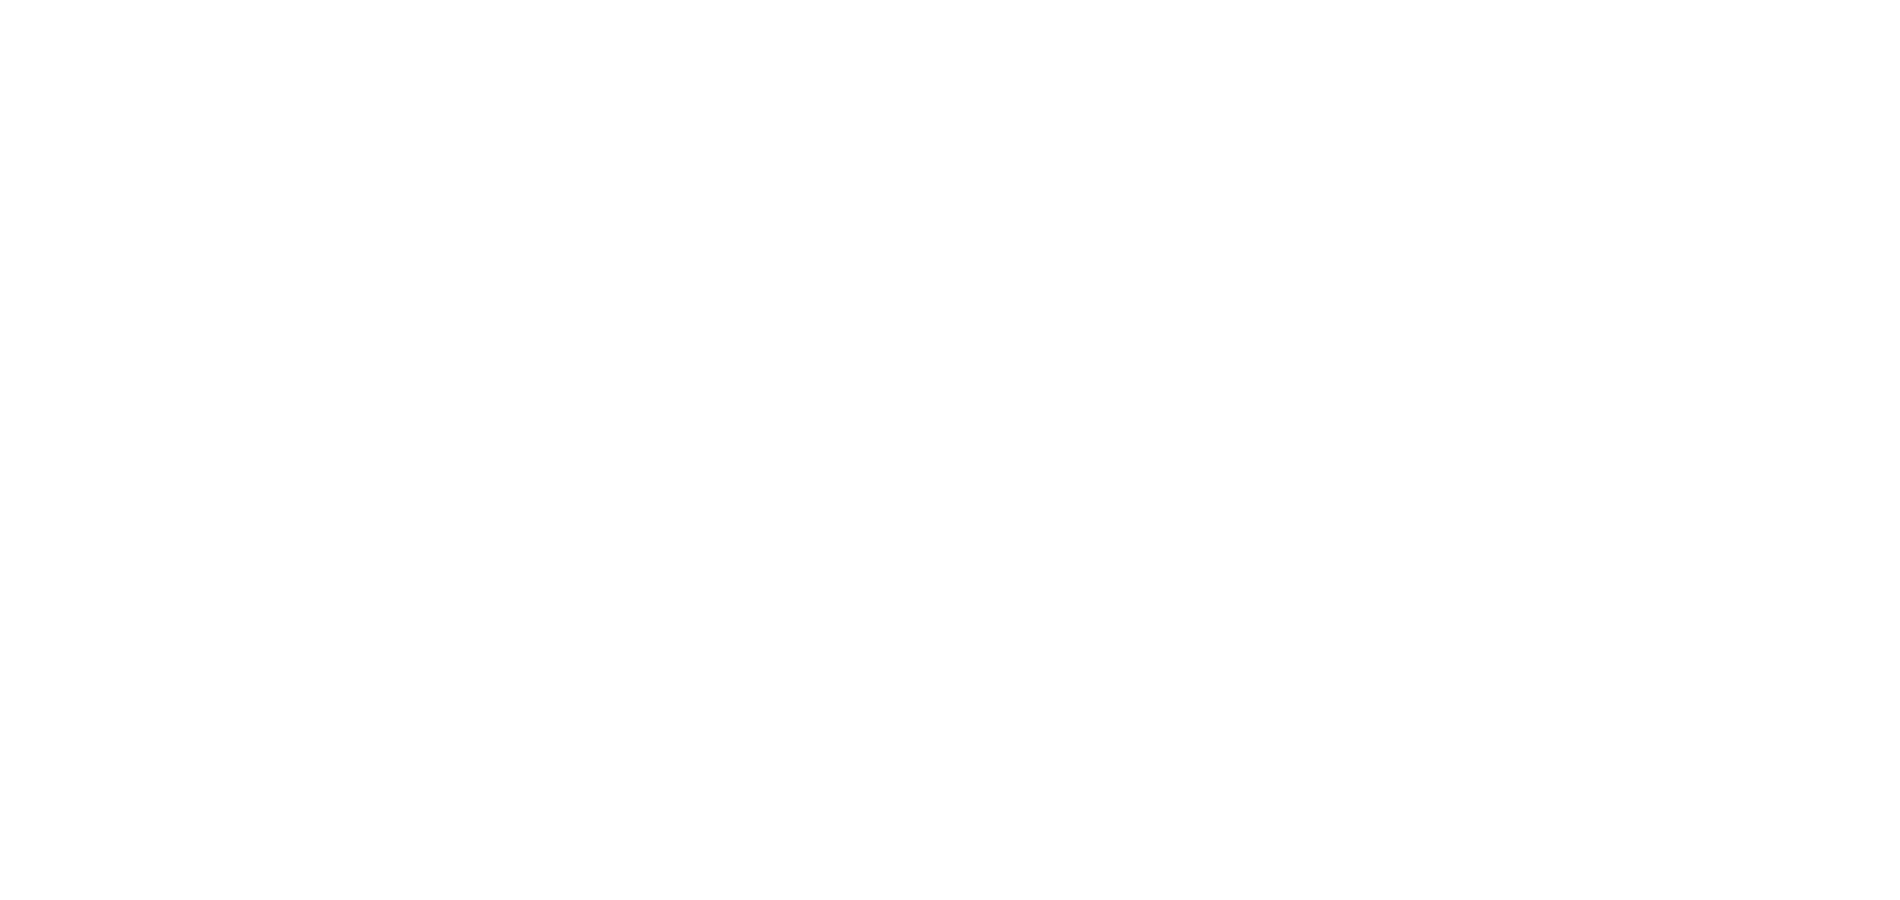 playwaze logo